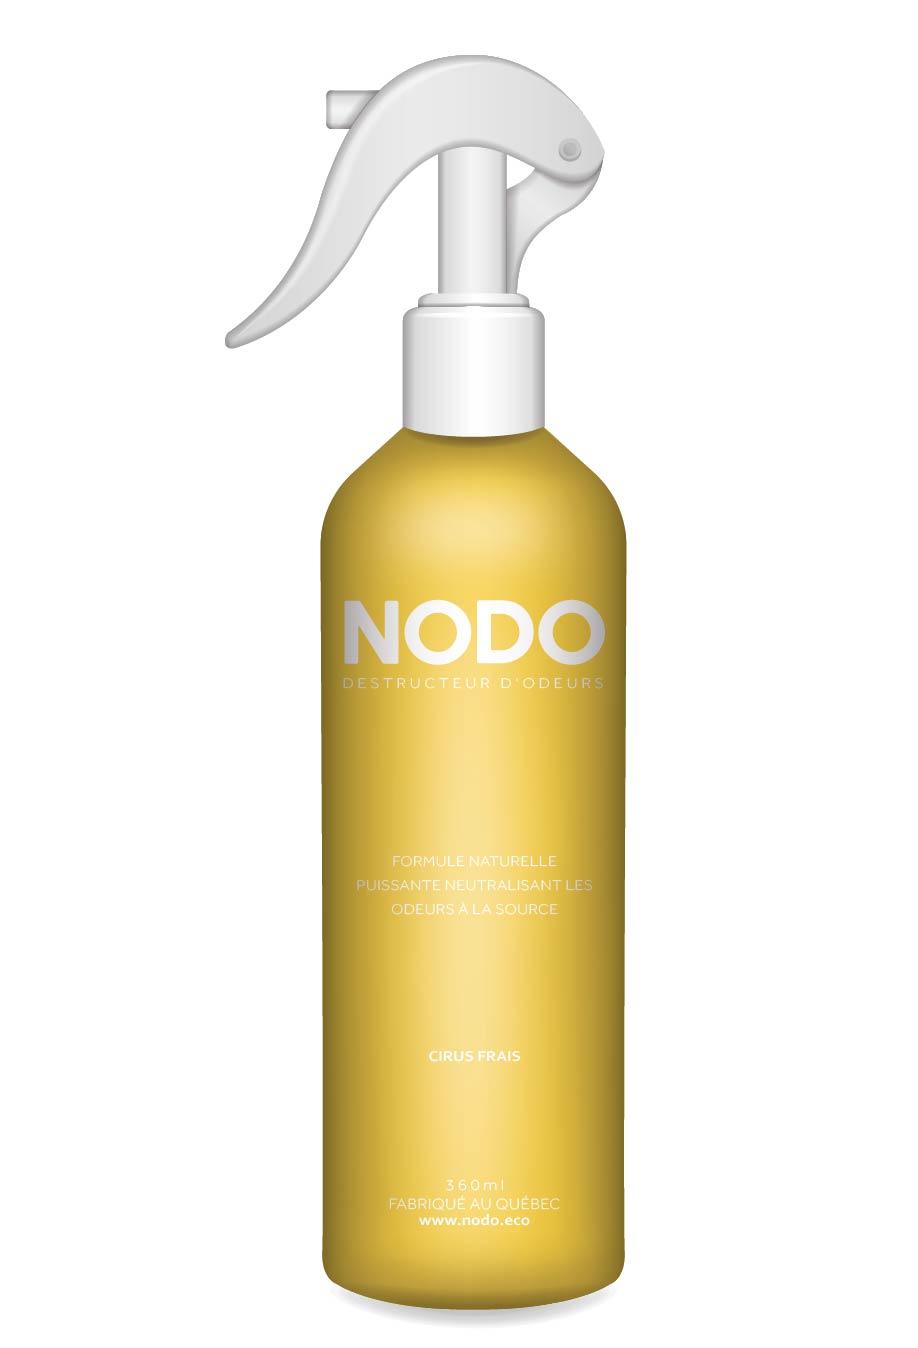 Neutralisant d'odeur NODO en spray au citrus frais